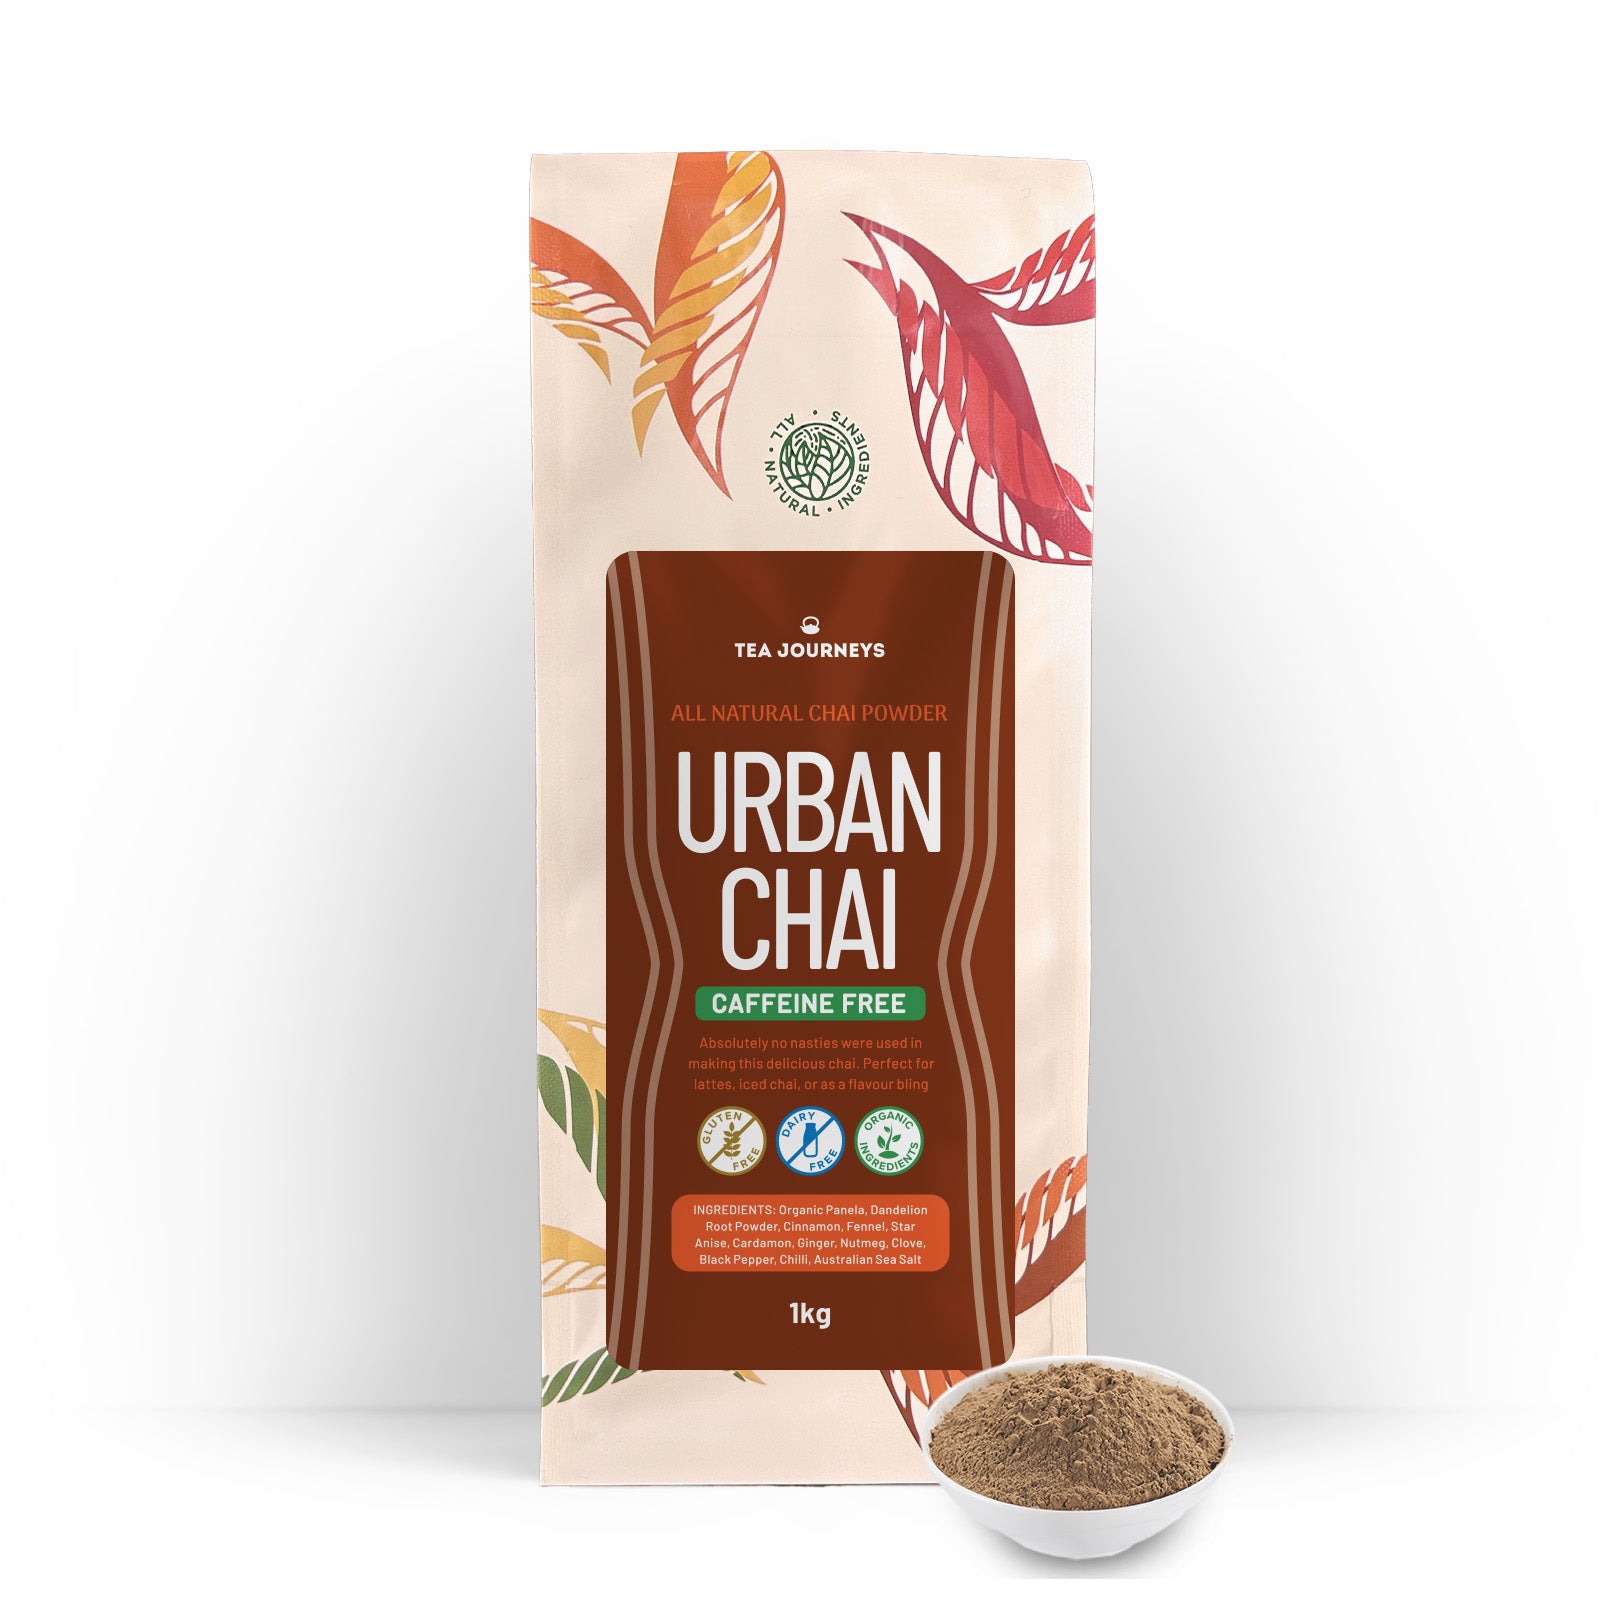 Urban Chai Caffeine Free - All-natural Chai Tea